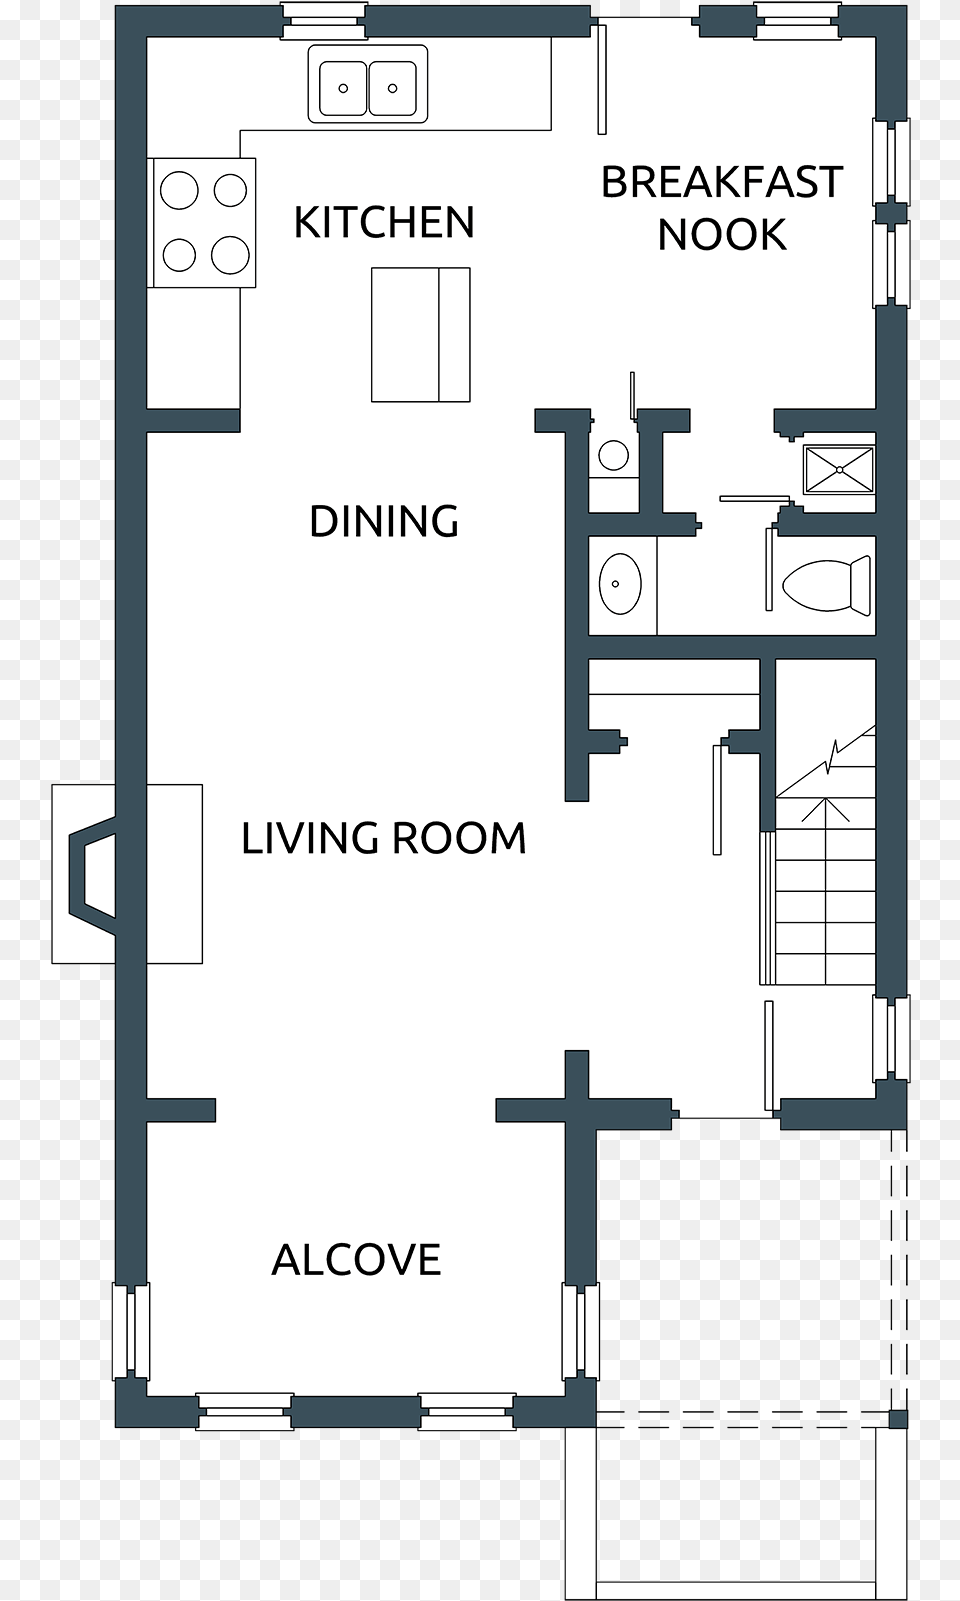 1st Floor Floor Plan, Diagram, Floor Plan, Chart, Plot Png